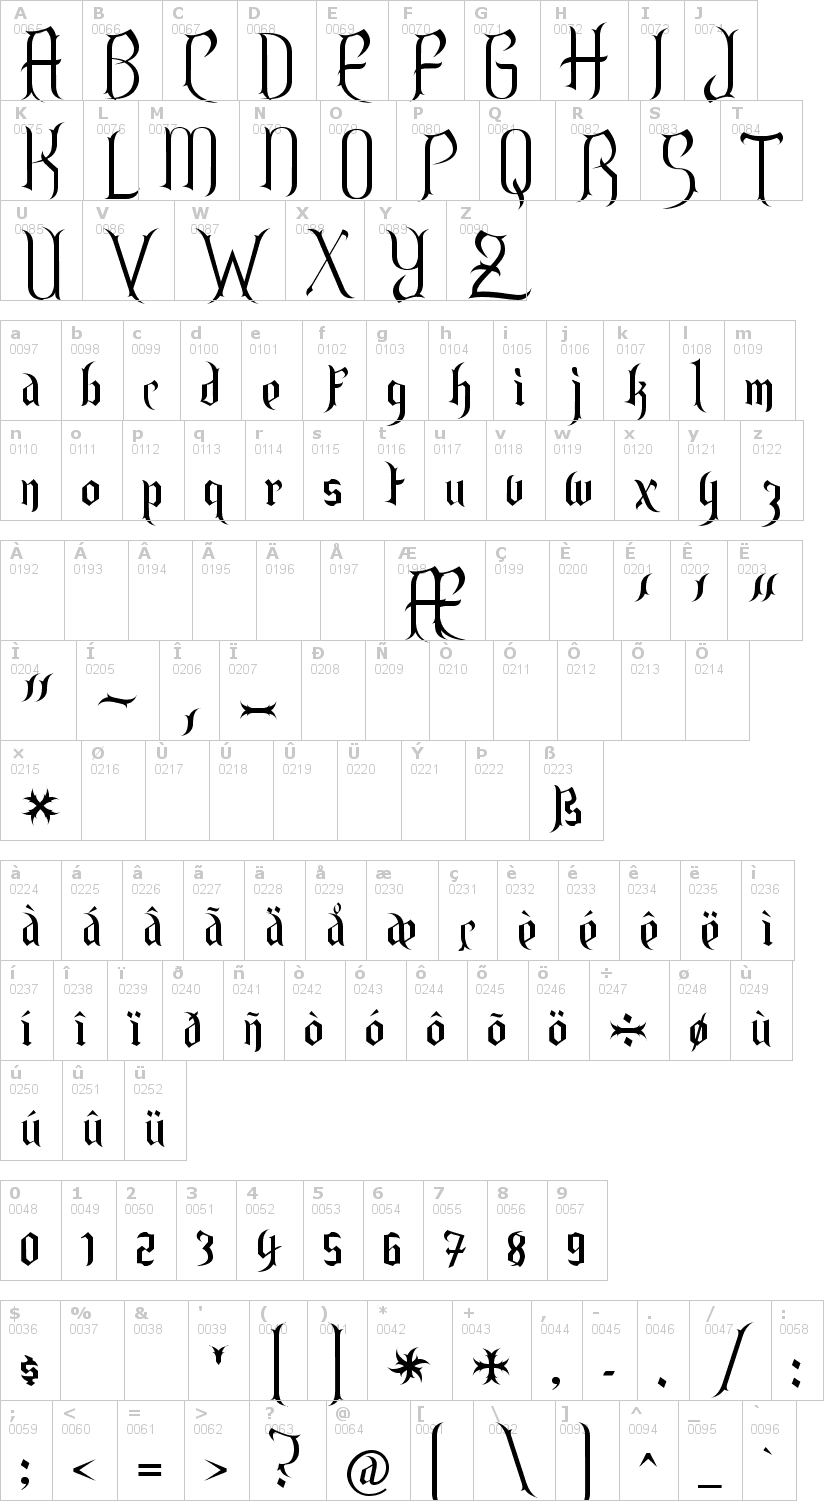 Lettere dell'alfabeto del font endor con le quali è possibile realizzare adesivi prespaziati